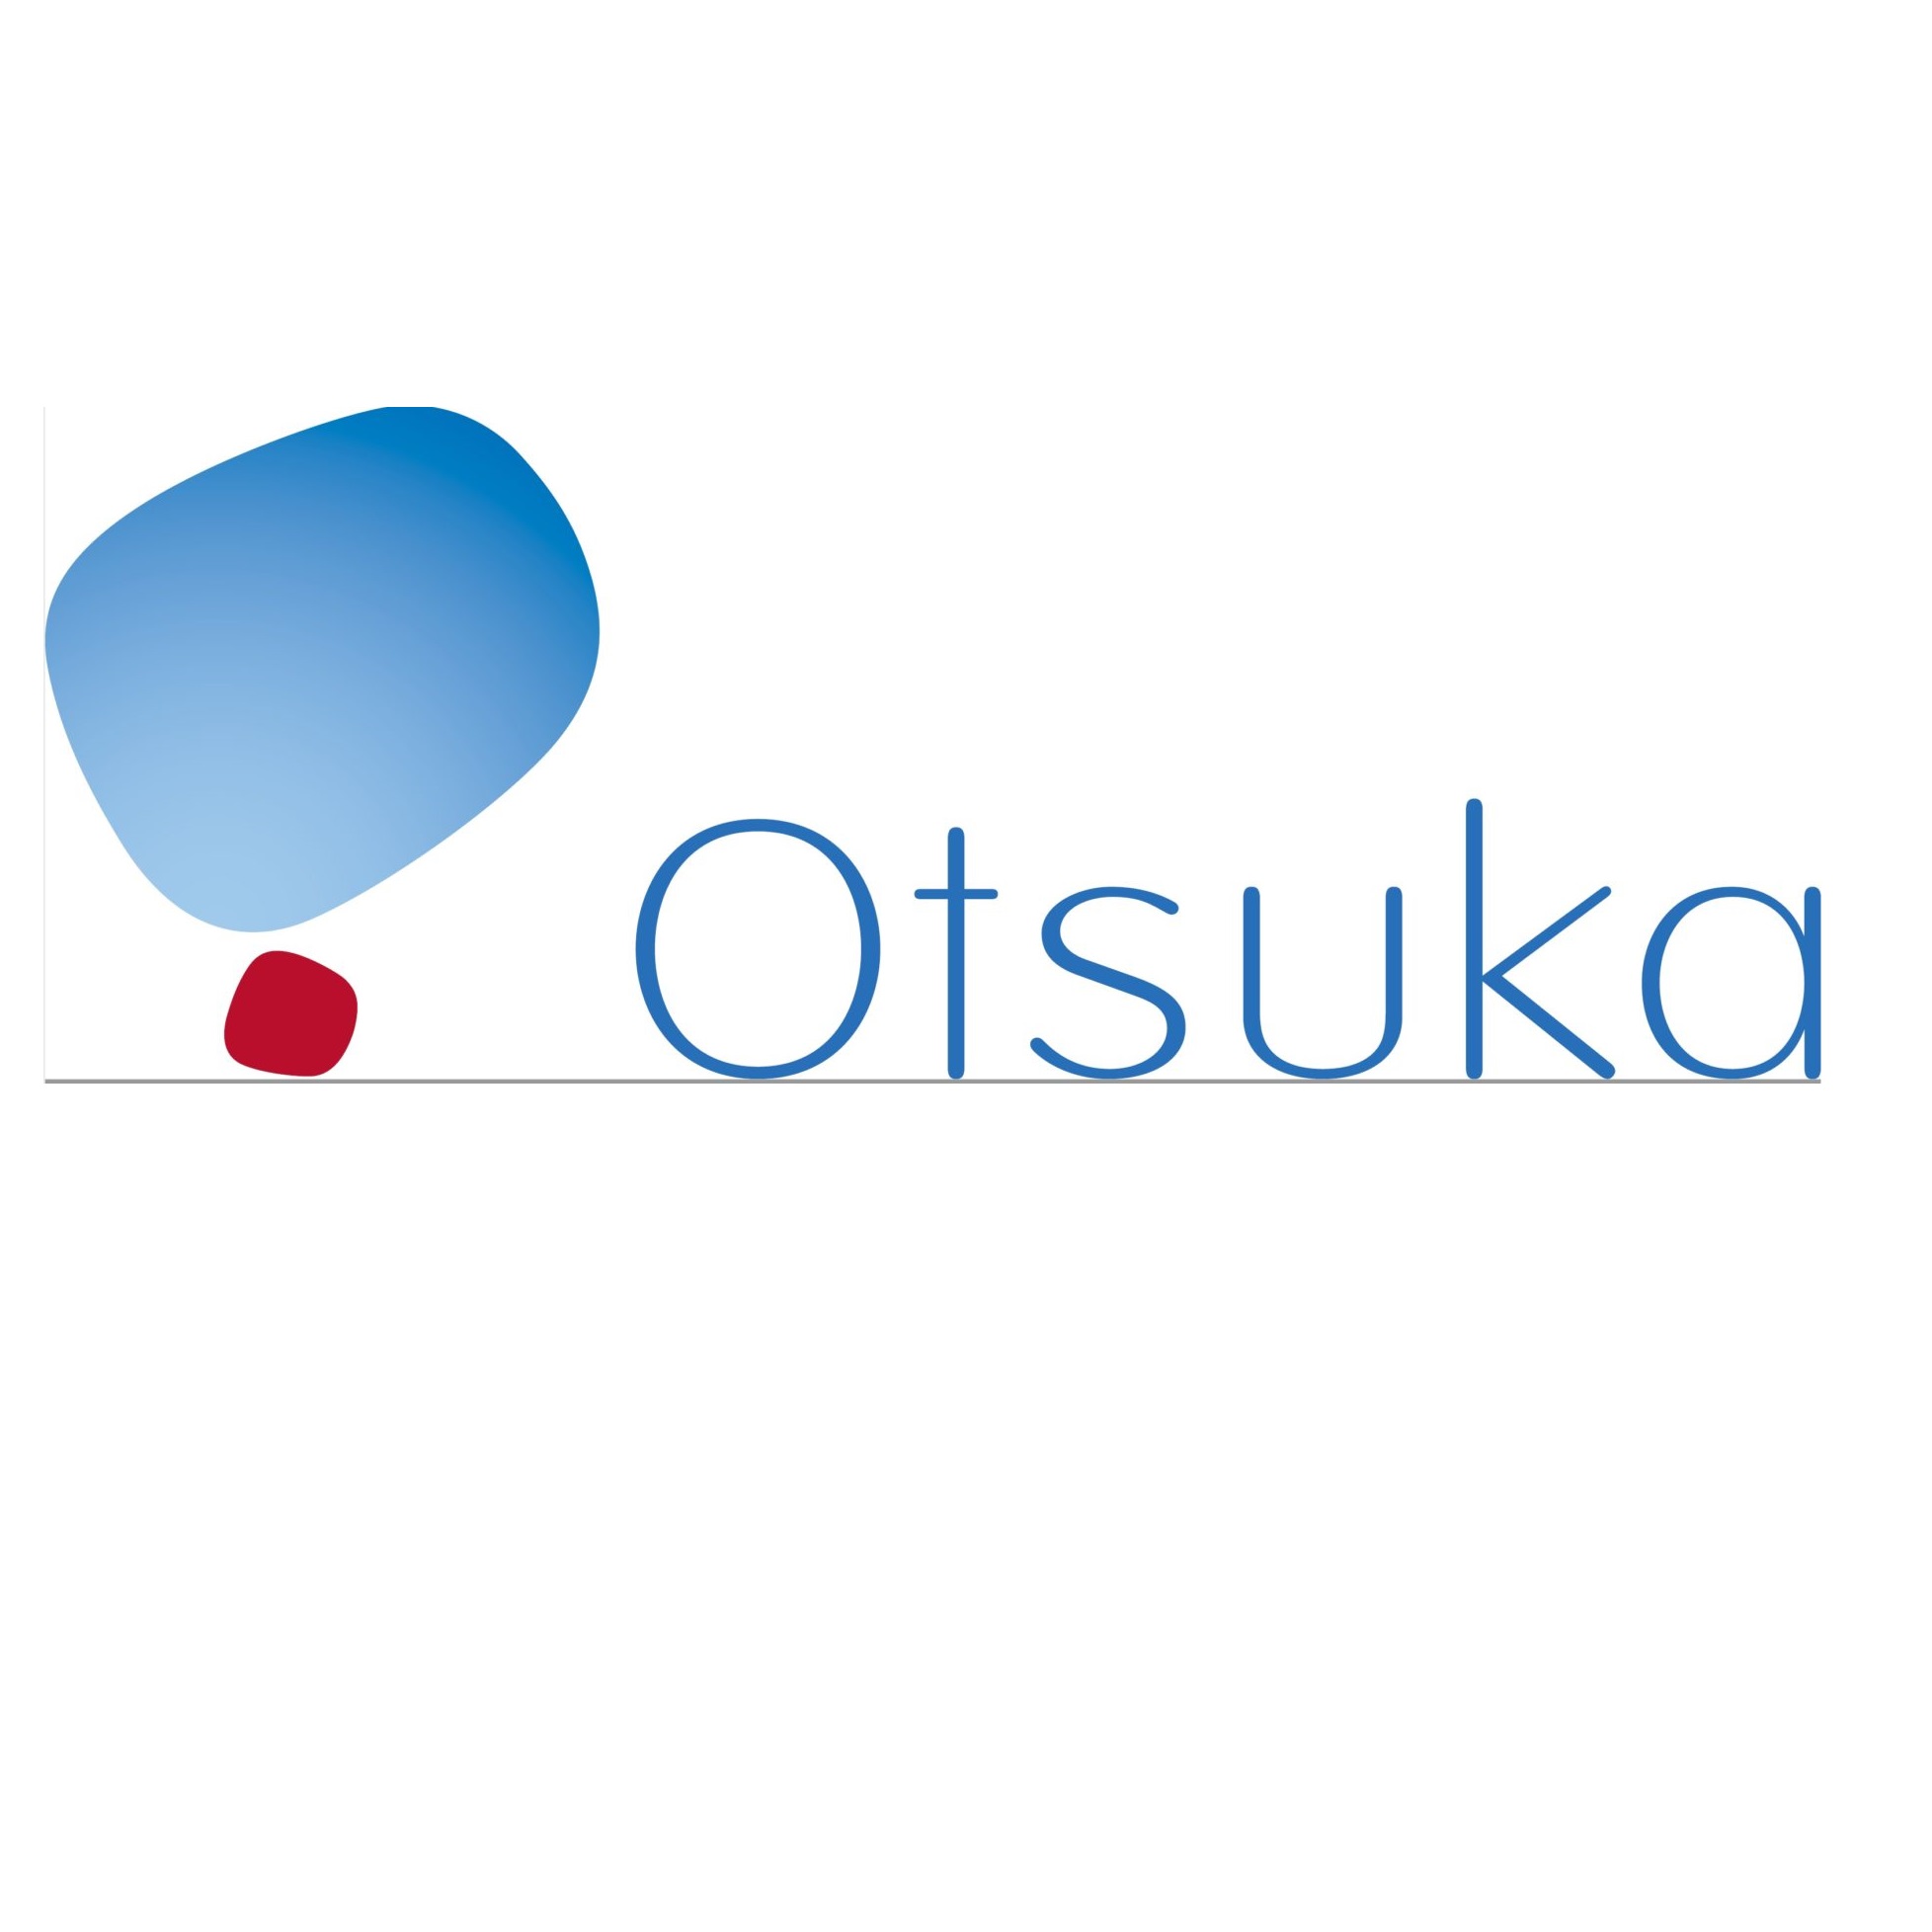 Otsuka pharmaceutical company